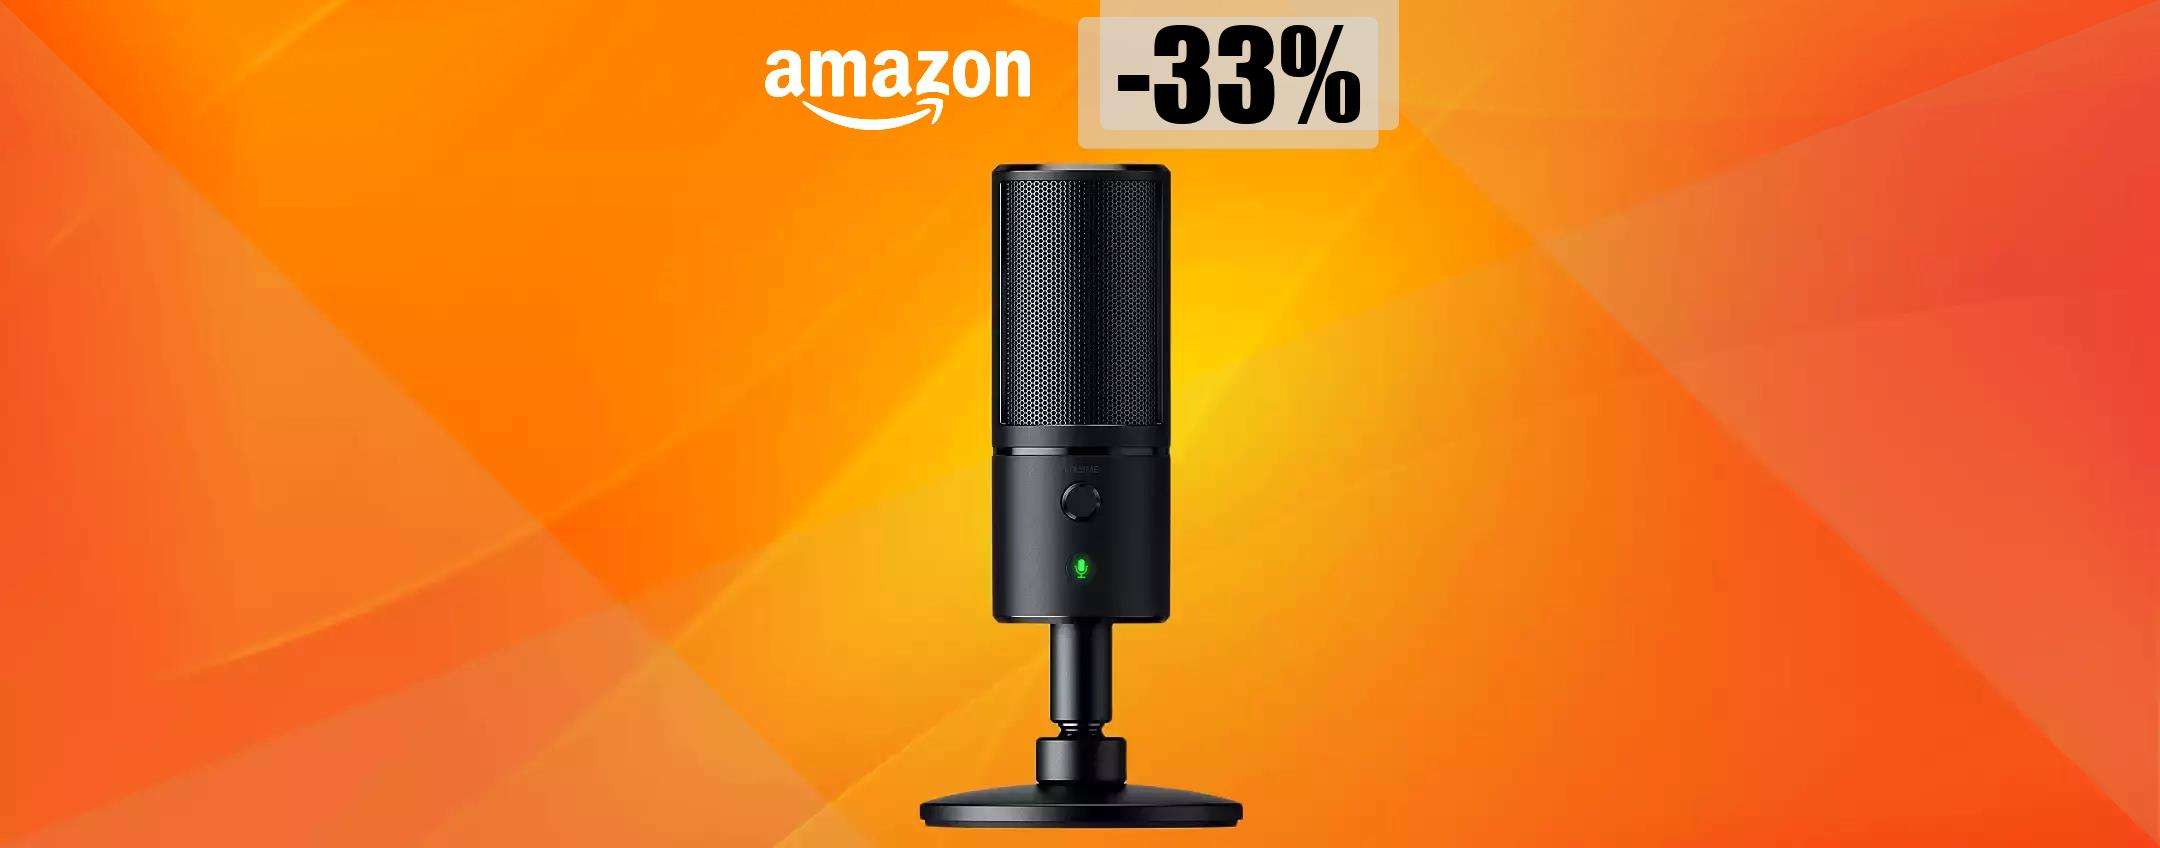 Microfono Razer, massima qualità ad un prezzo mai visto prima (73€)